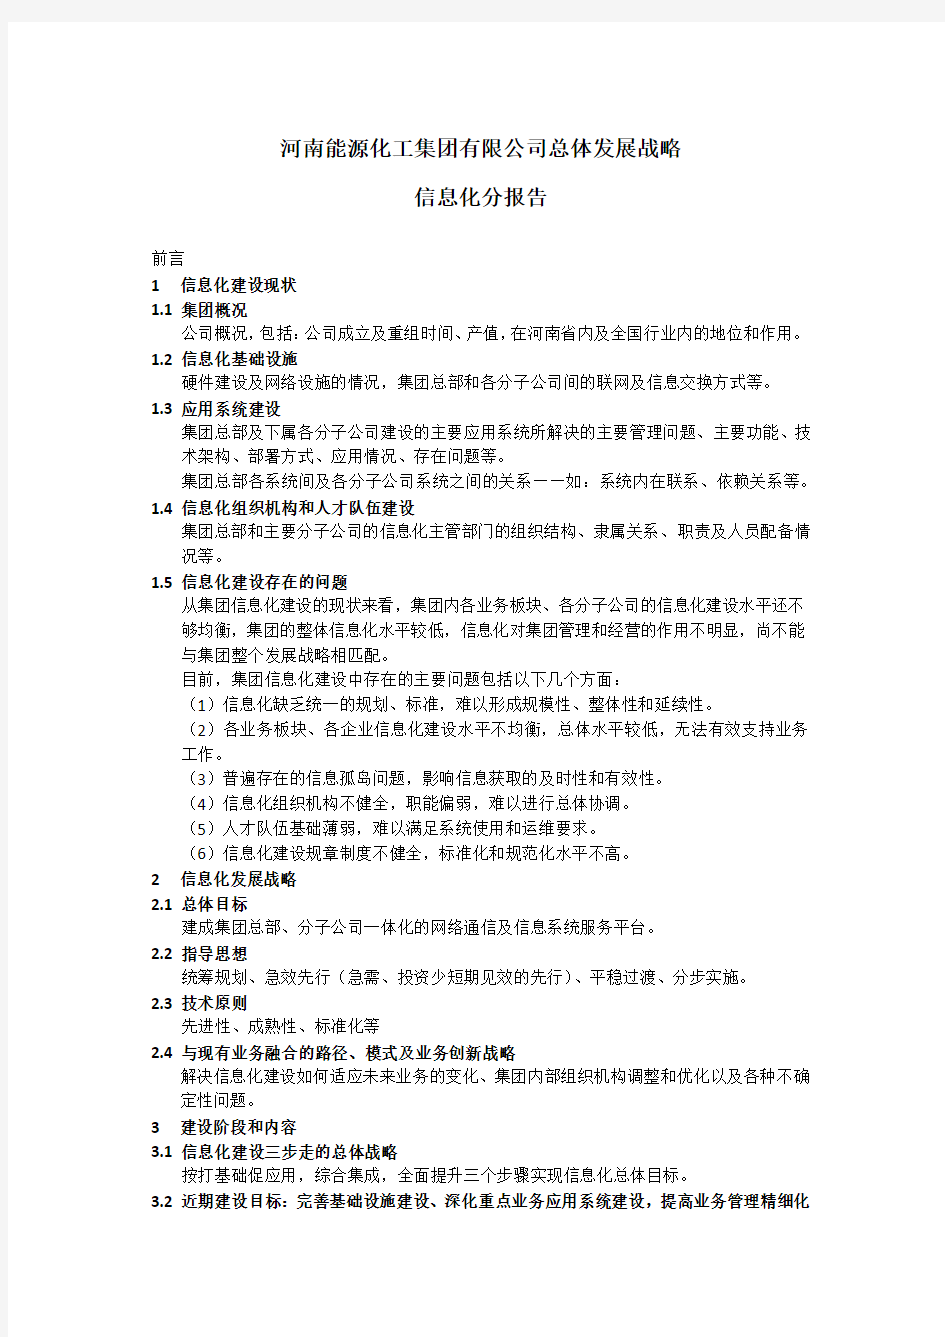 河南能源化工集团有限公司总体发展战略信息化分报告4(提交提纲版)